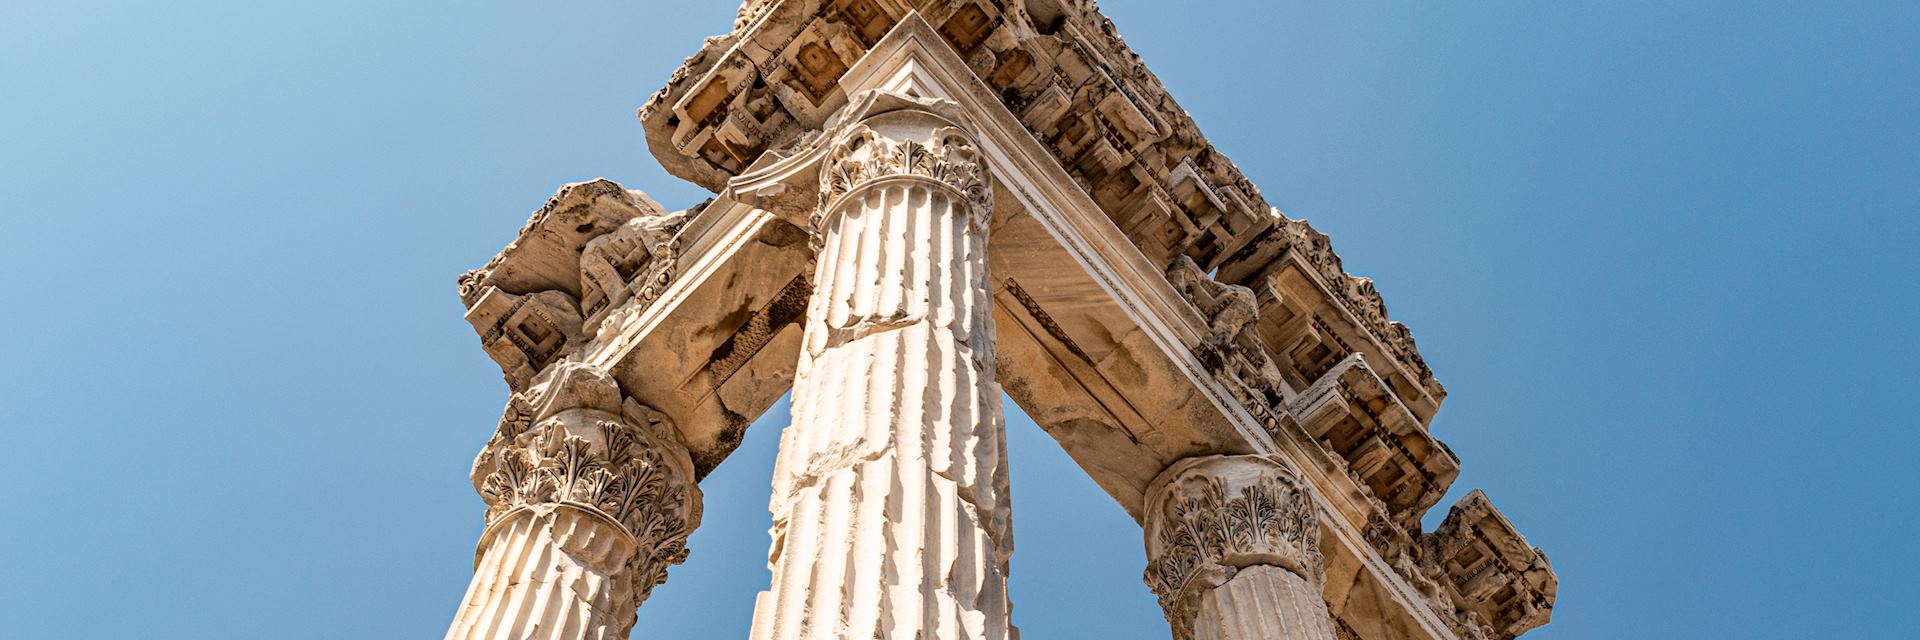 Ruins of Pergamon Acropolis